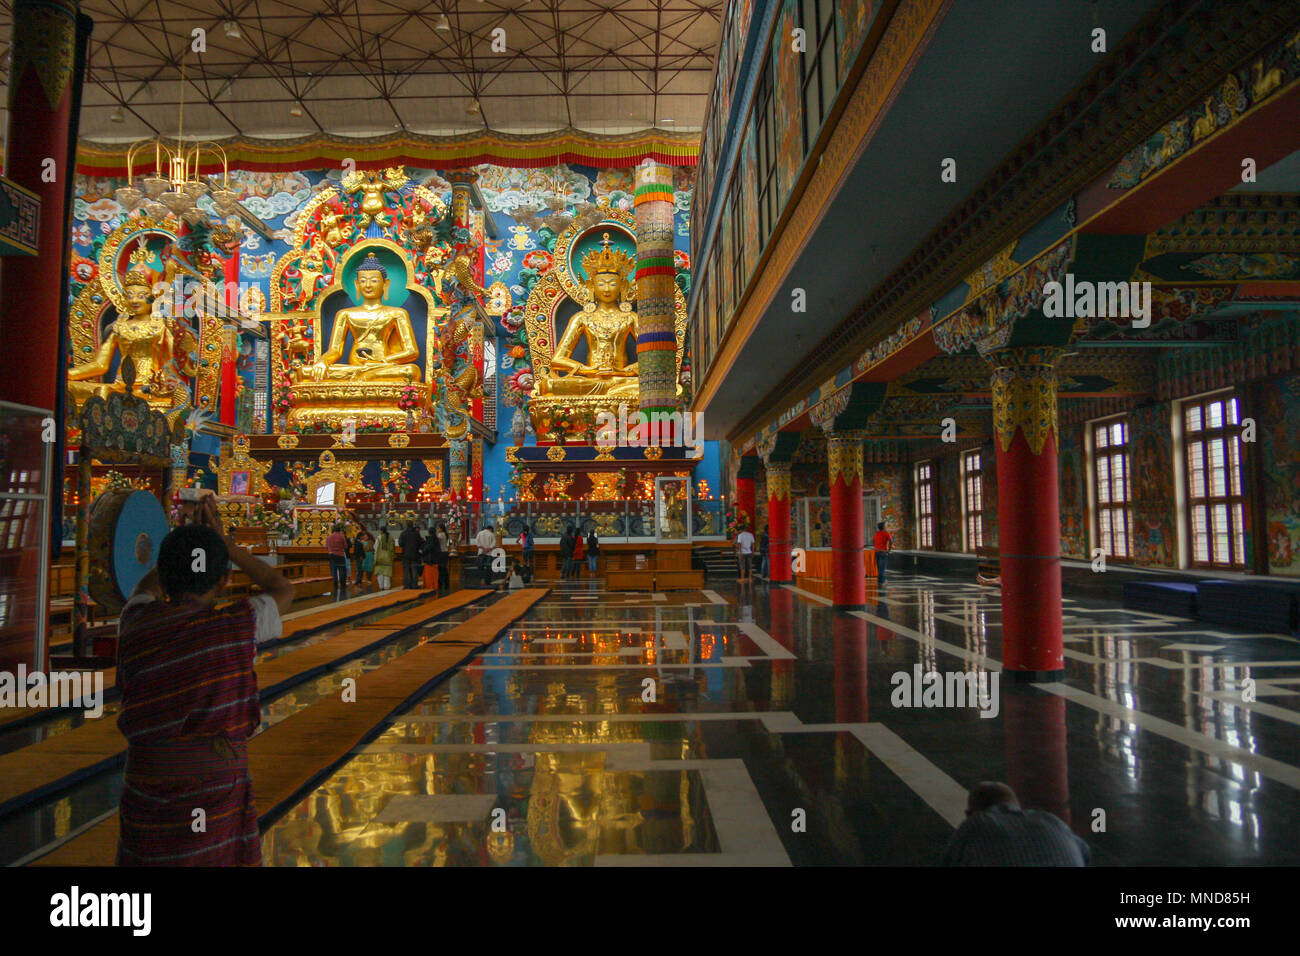 Namdroling Monastery - at Kushalnagar (Bylakuppe) - Coorg, India Stock Photo